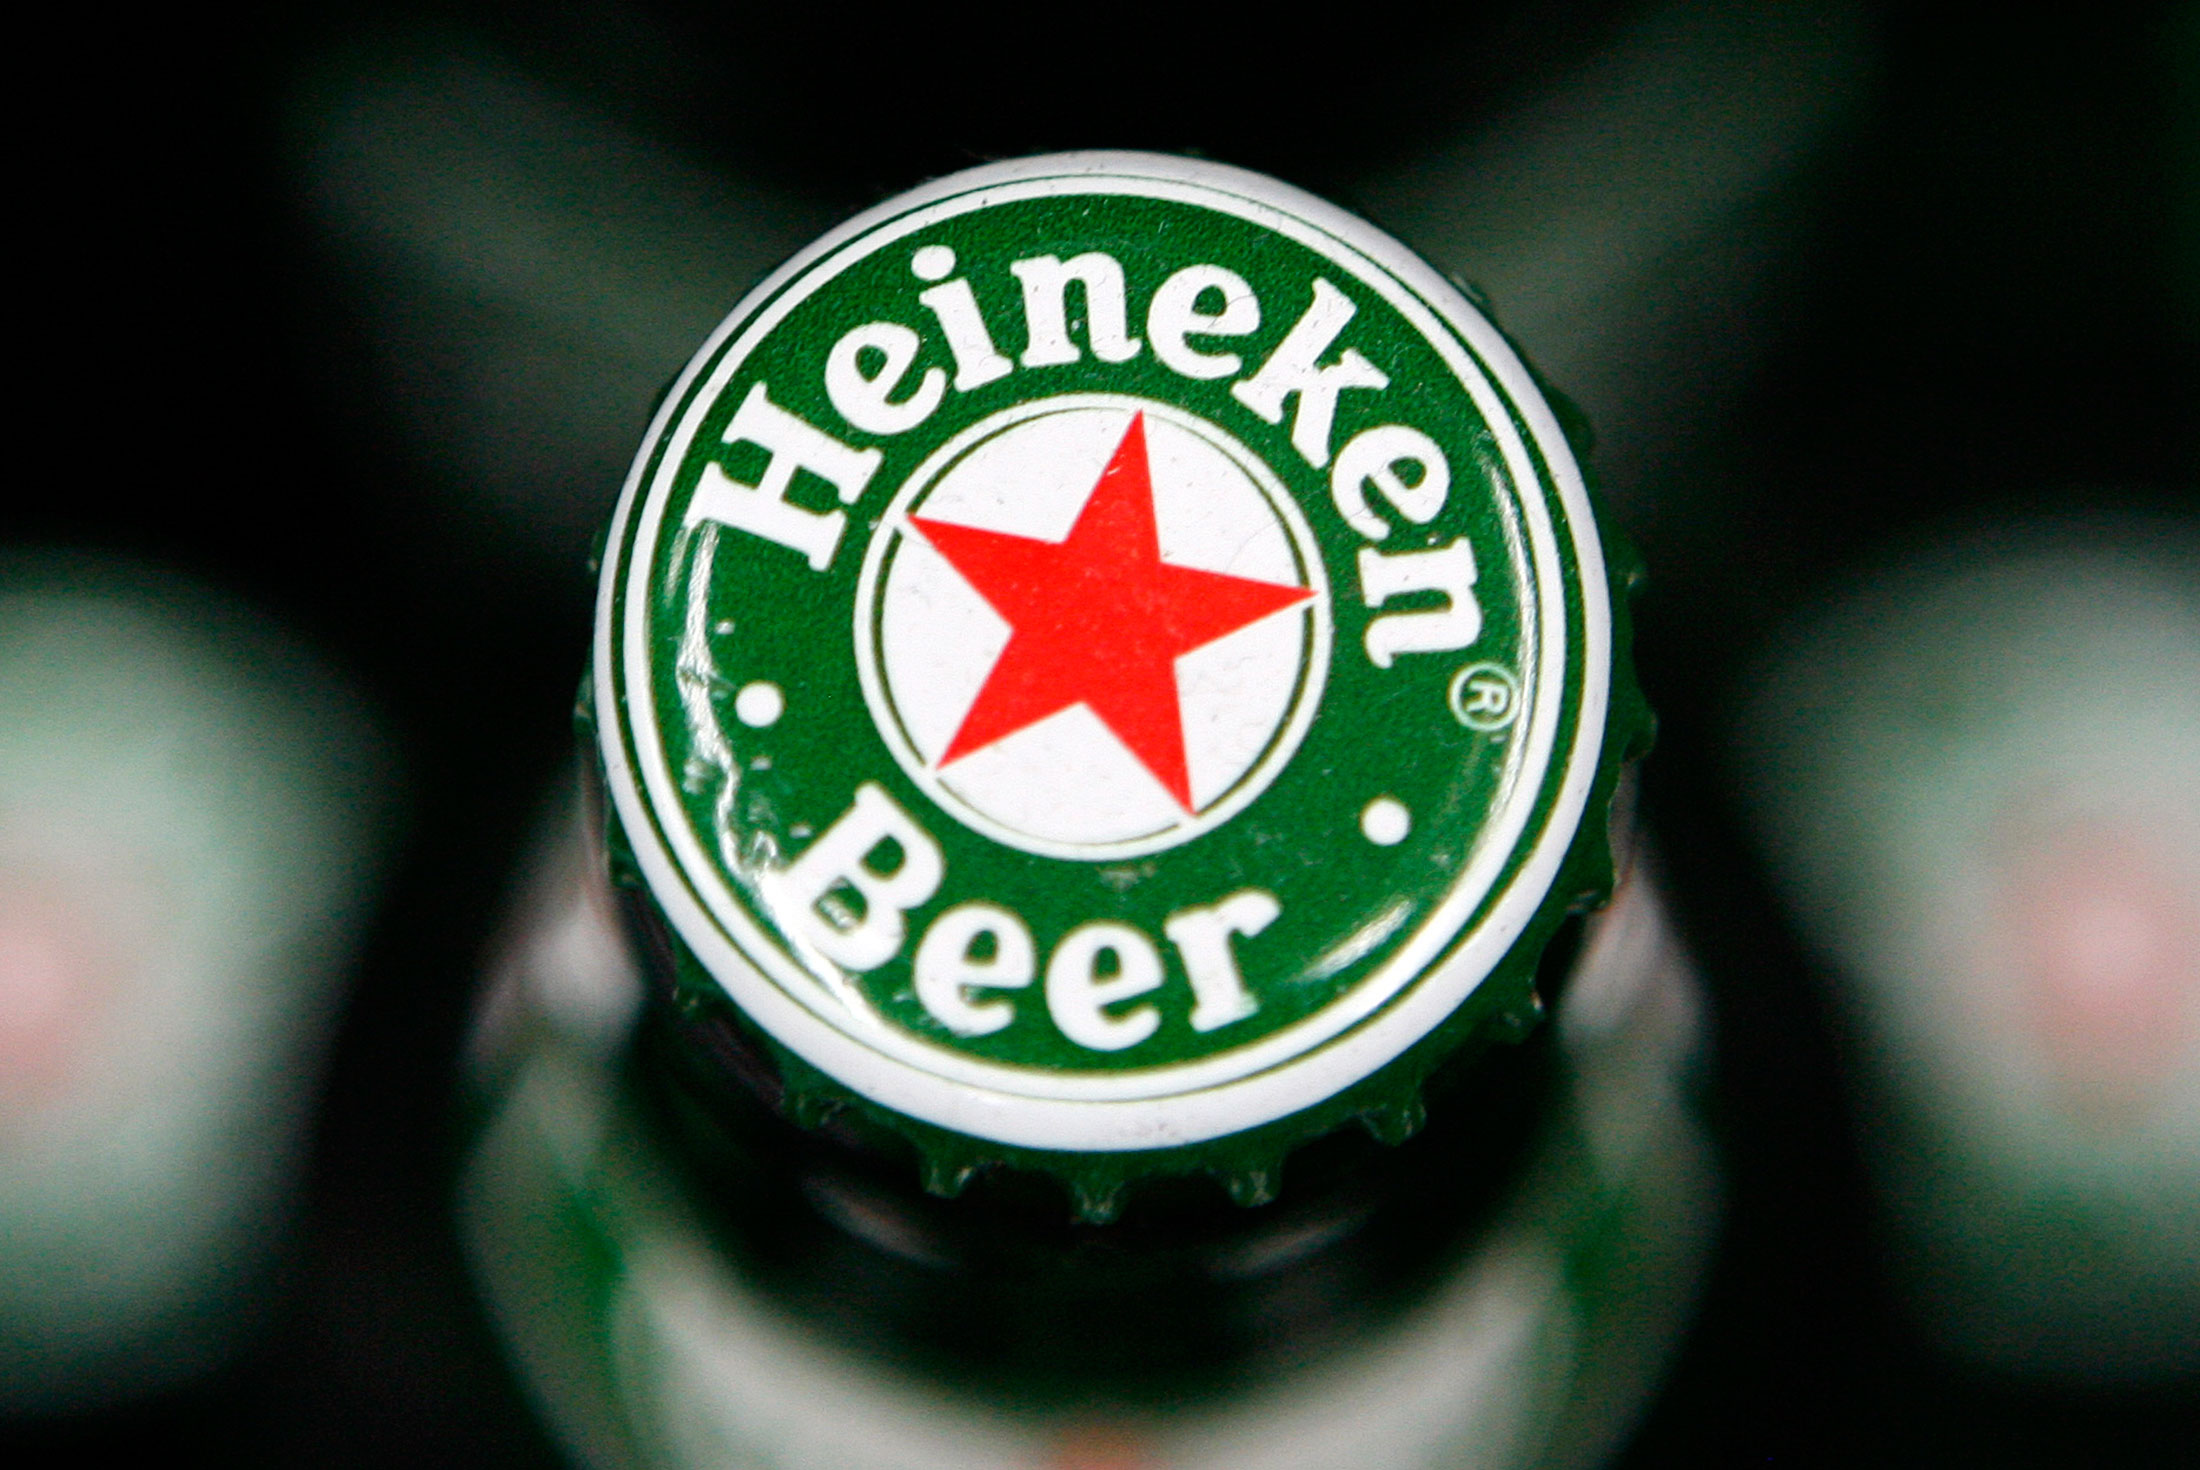 Heineken in legal tussle with Virgin over N/A Desperados - Just Drinks